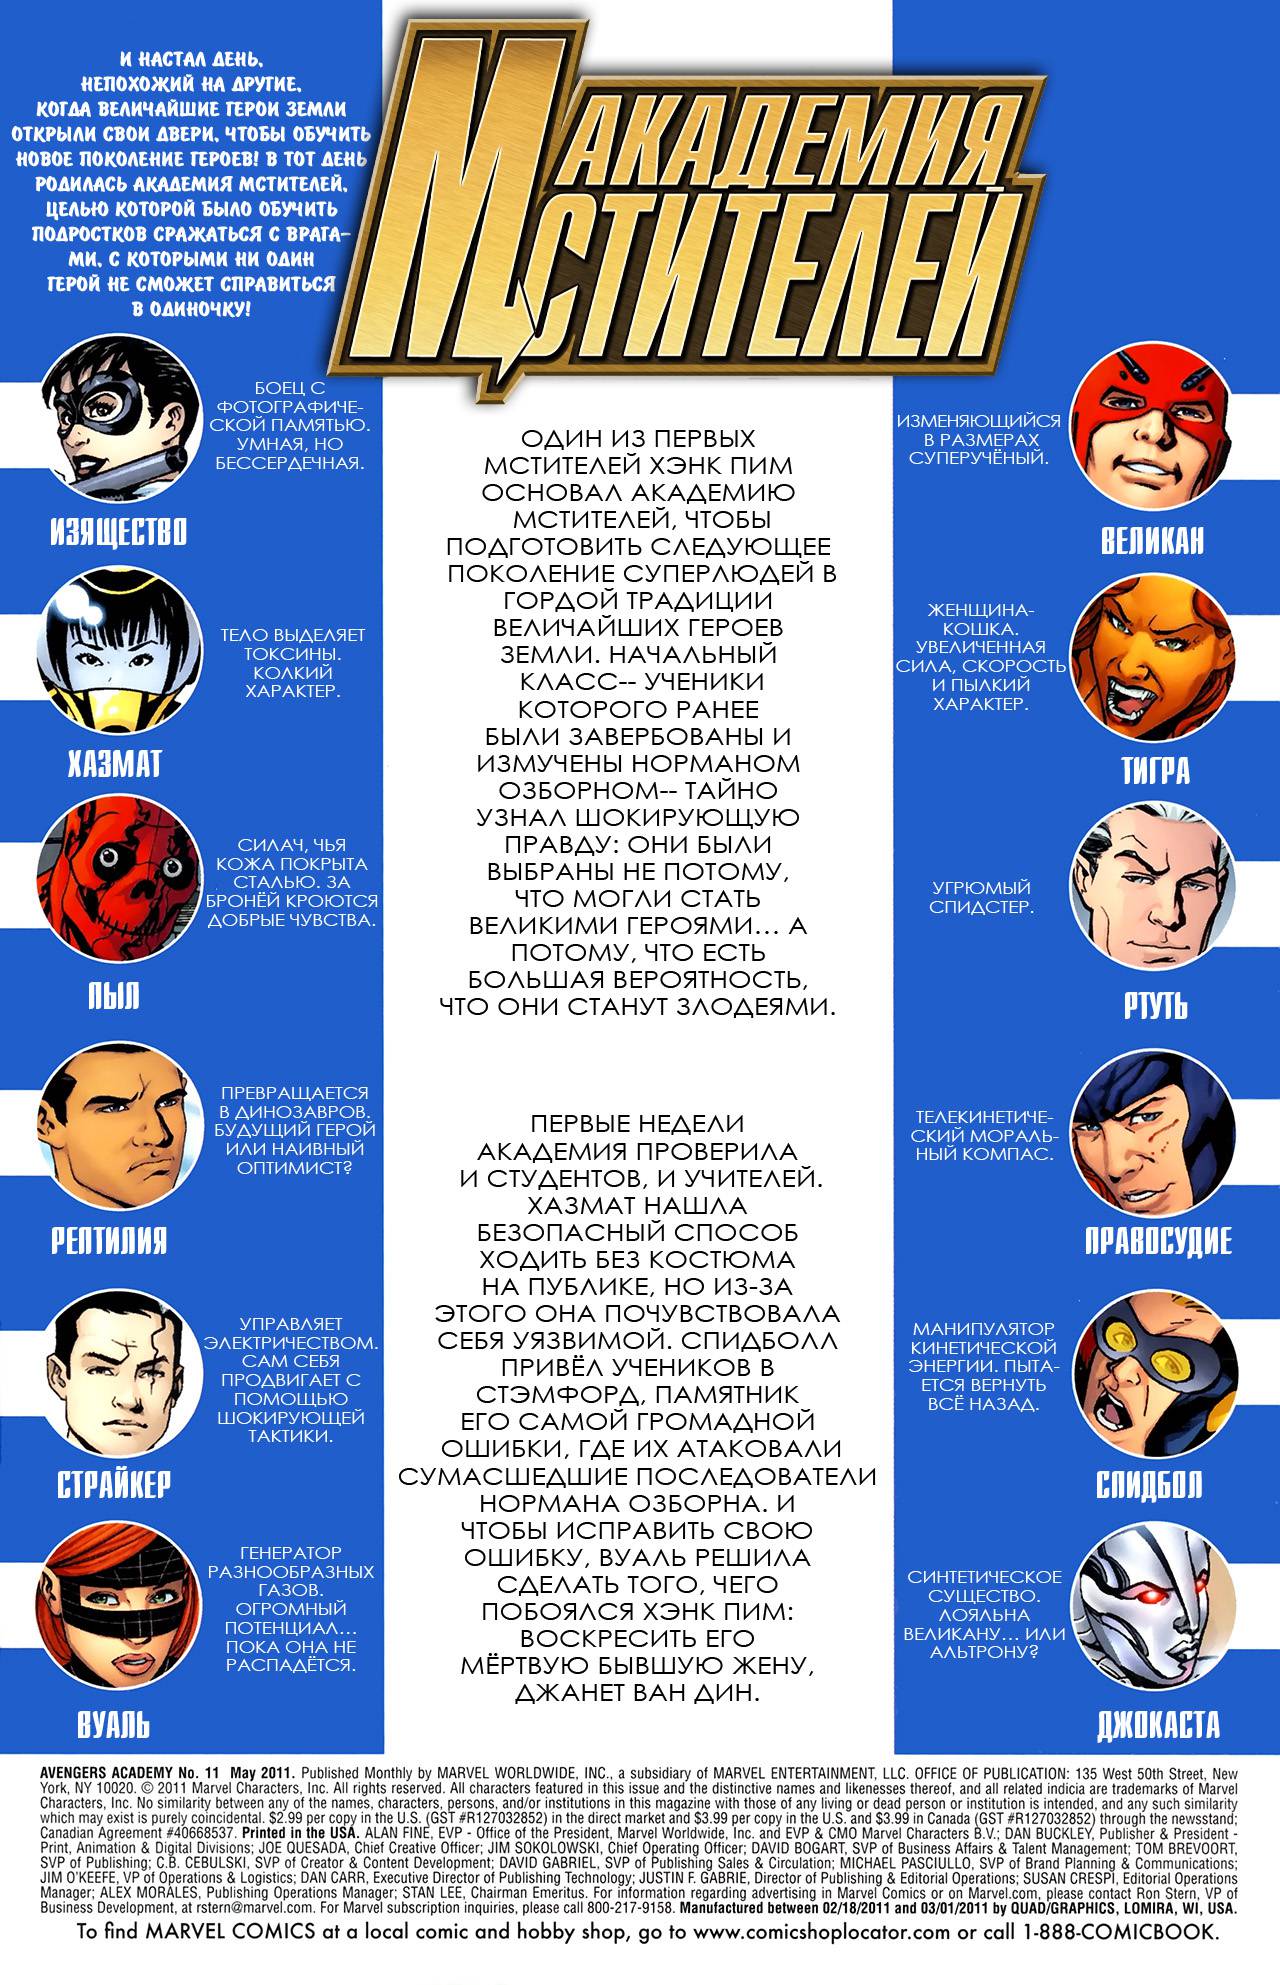 Академия Мстителей №11 онлайн